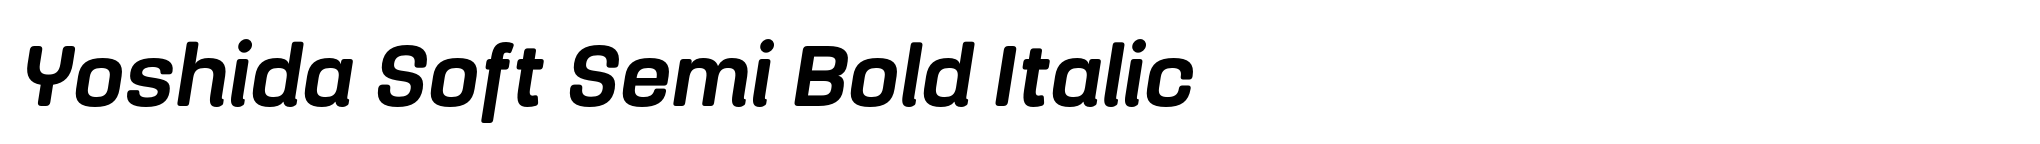 Yoshida Soft Semi Bold Italic image